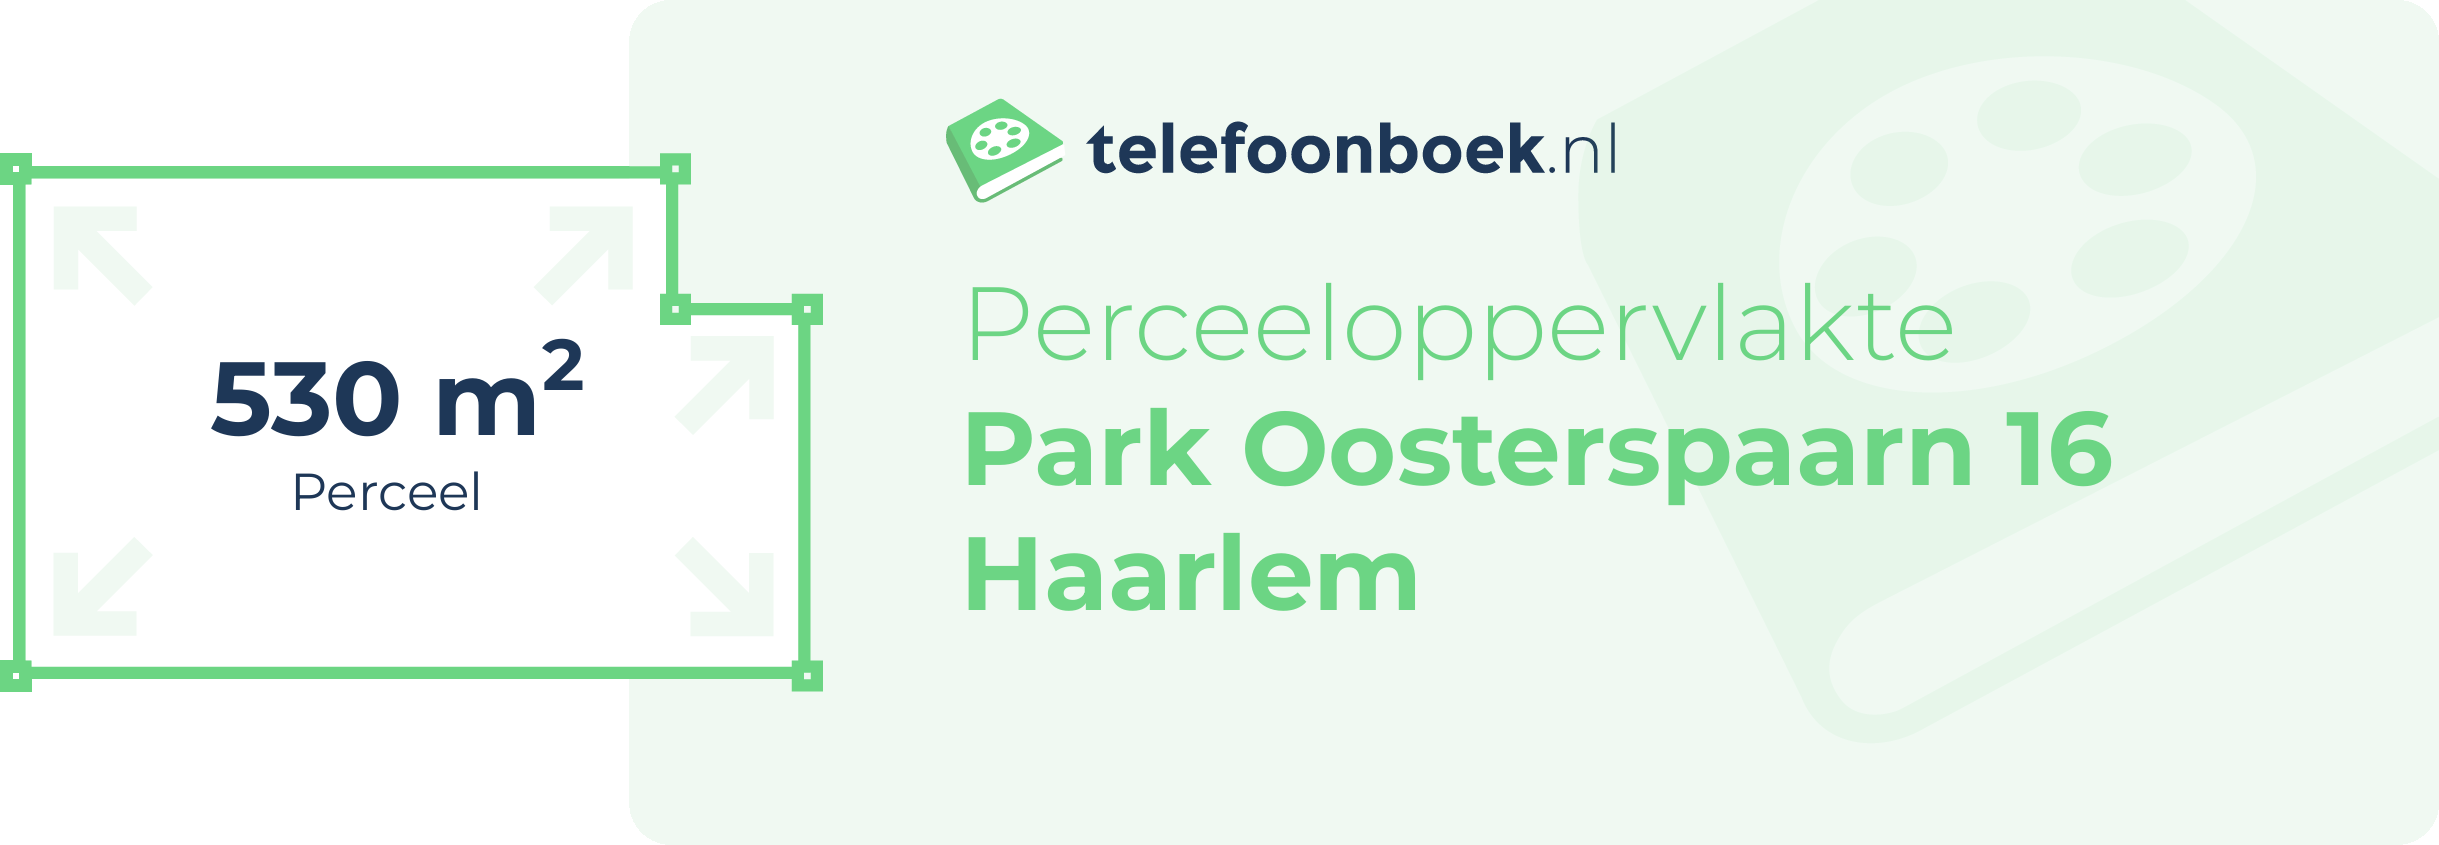 Perceeloppervlakte Park Oosterspaarn 16 Haarlem